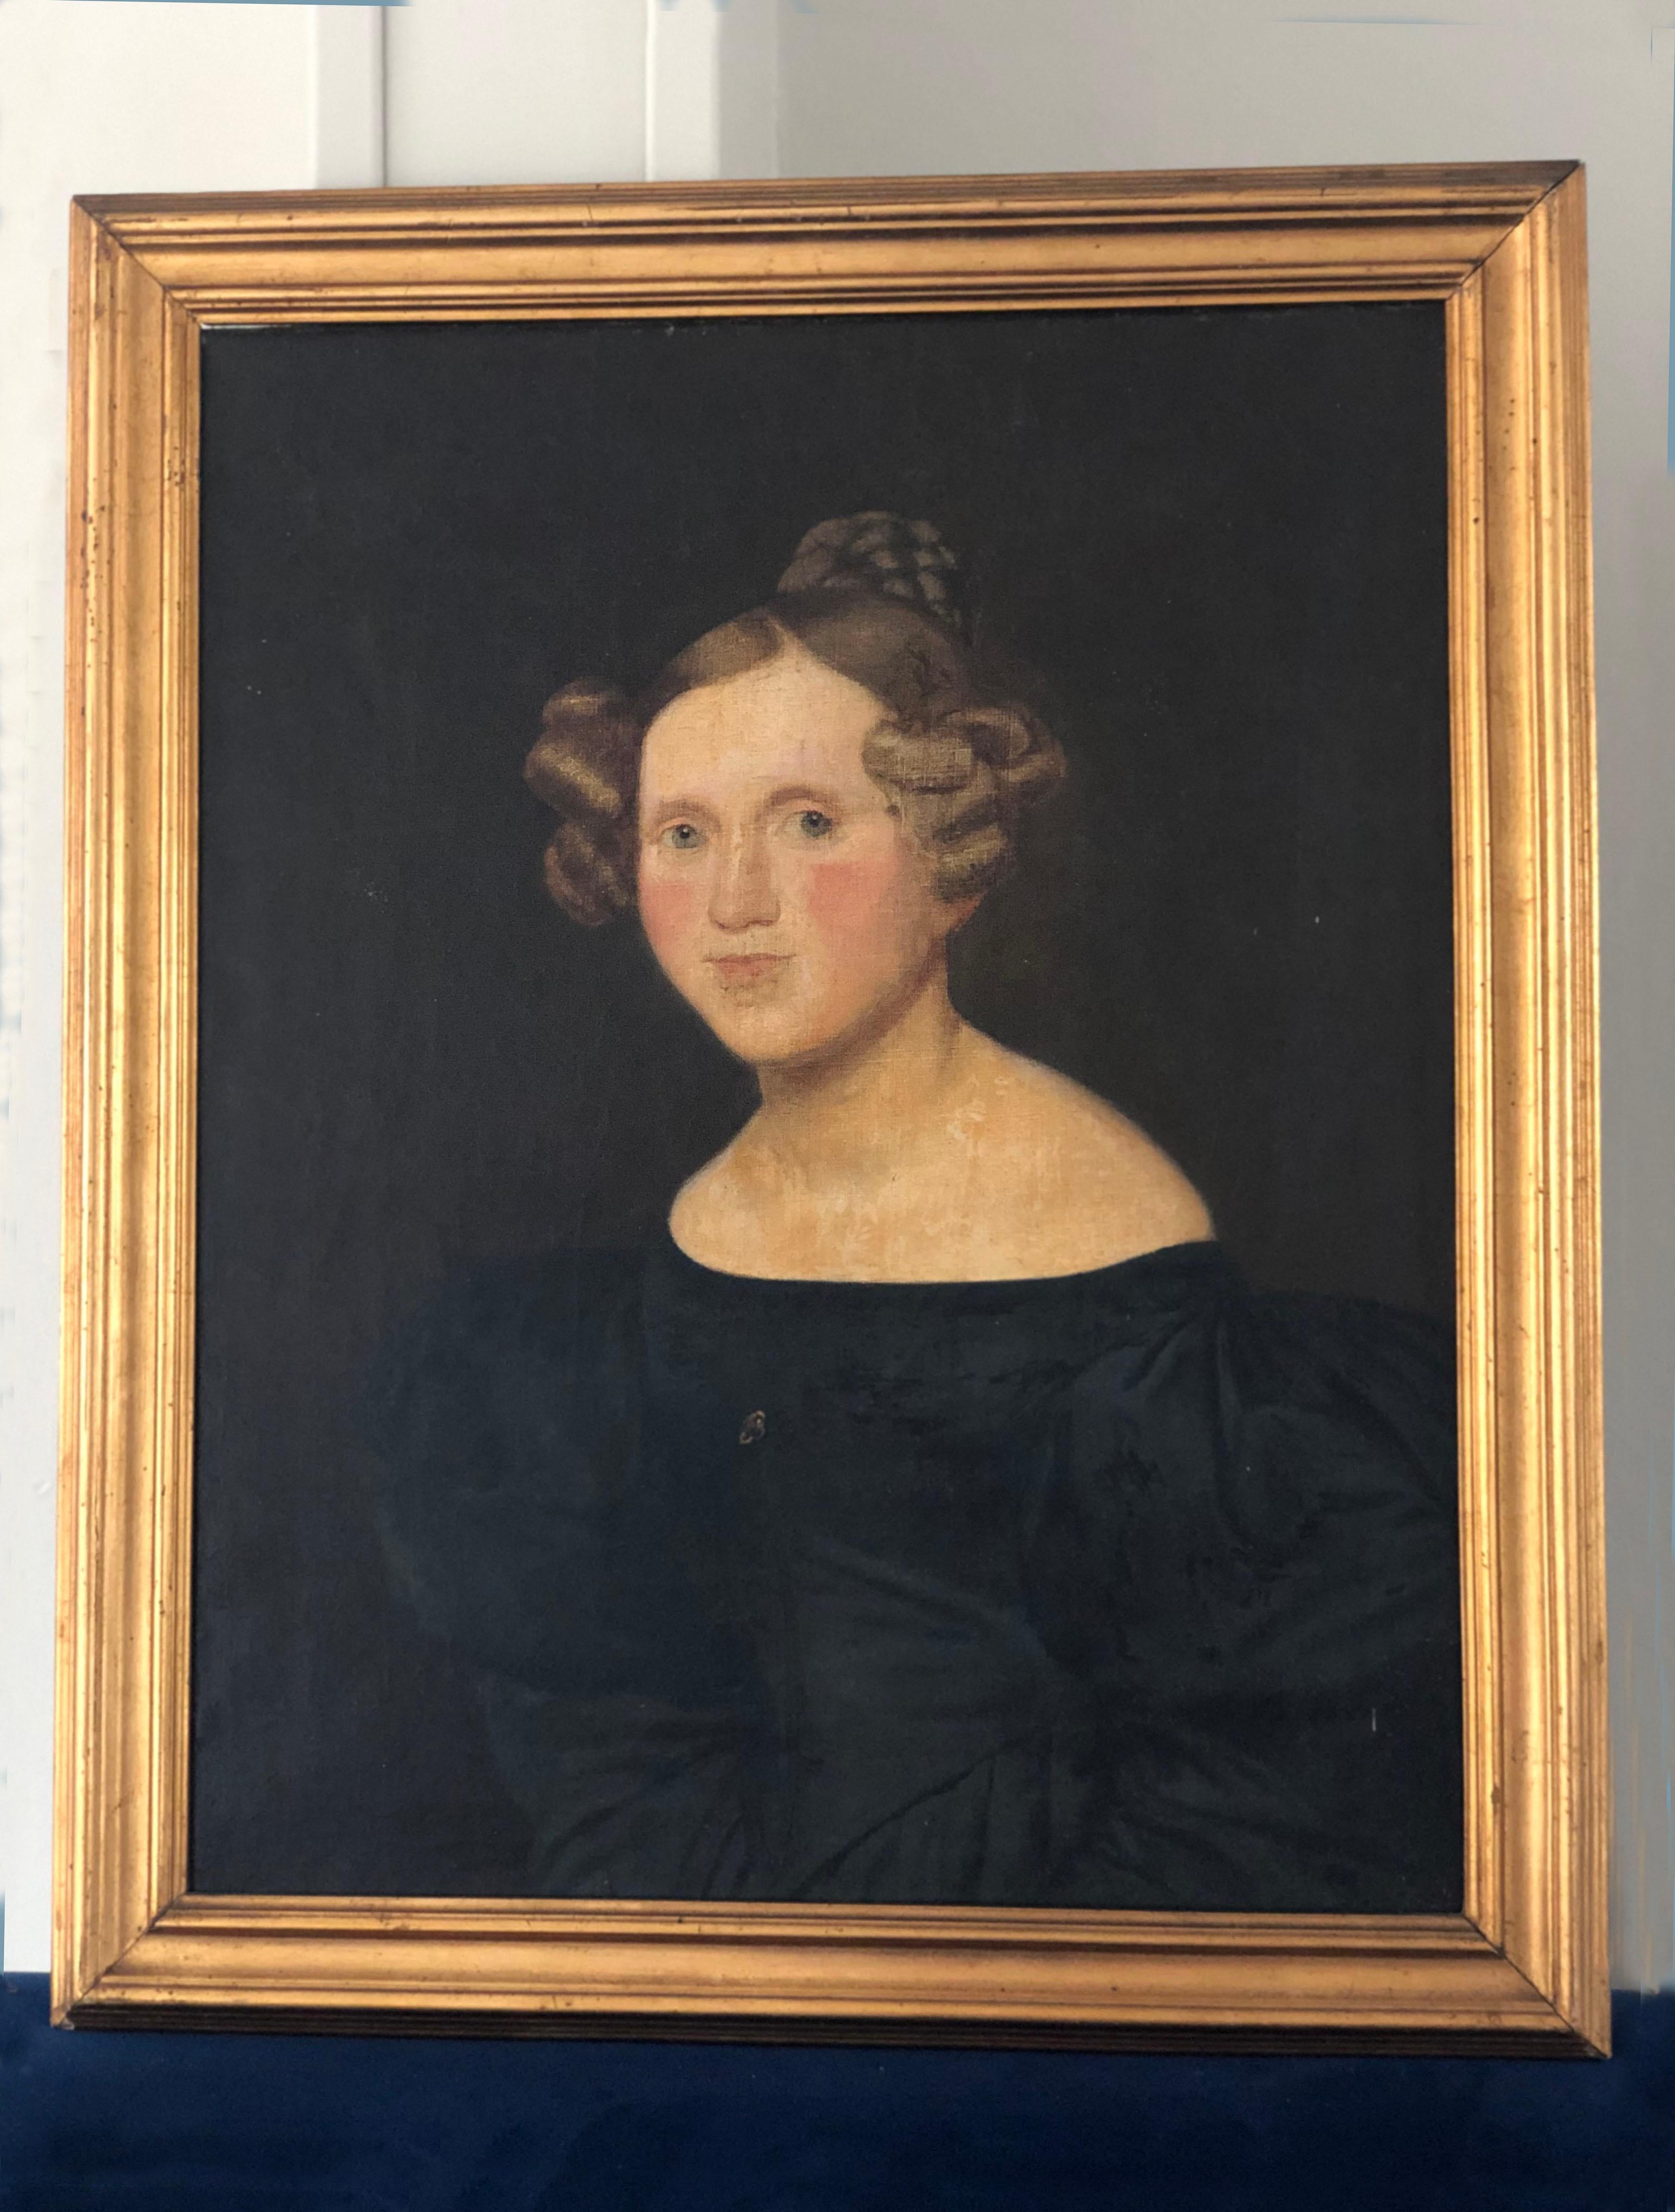 Dieses Ölgemälde fängt das Wesen einer vornehmen dänischen Frau aus dem frühen 19. Jahrhundert ein. Das Gemälde hat einen schönen dunklen Hintergrund, der den vergoldeten Rahmen zur Geltung bringt. 
Auf der Rückseite des Rahmens sind mehrere Namen